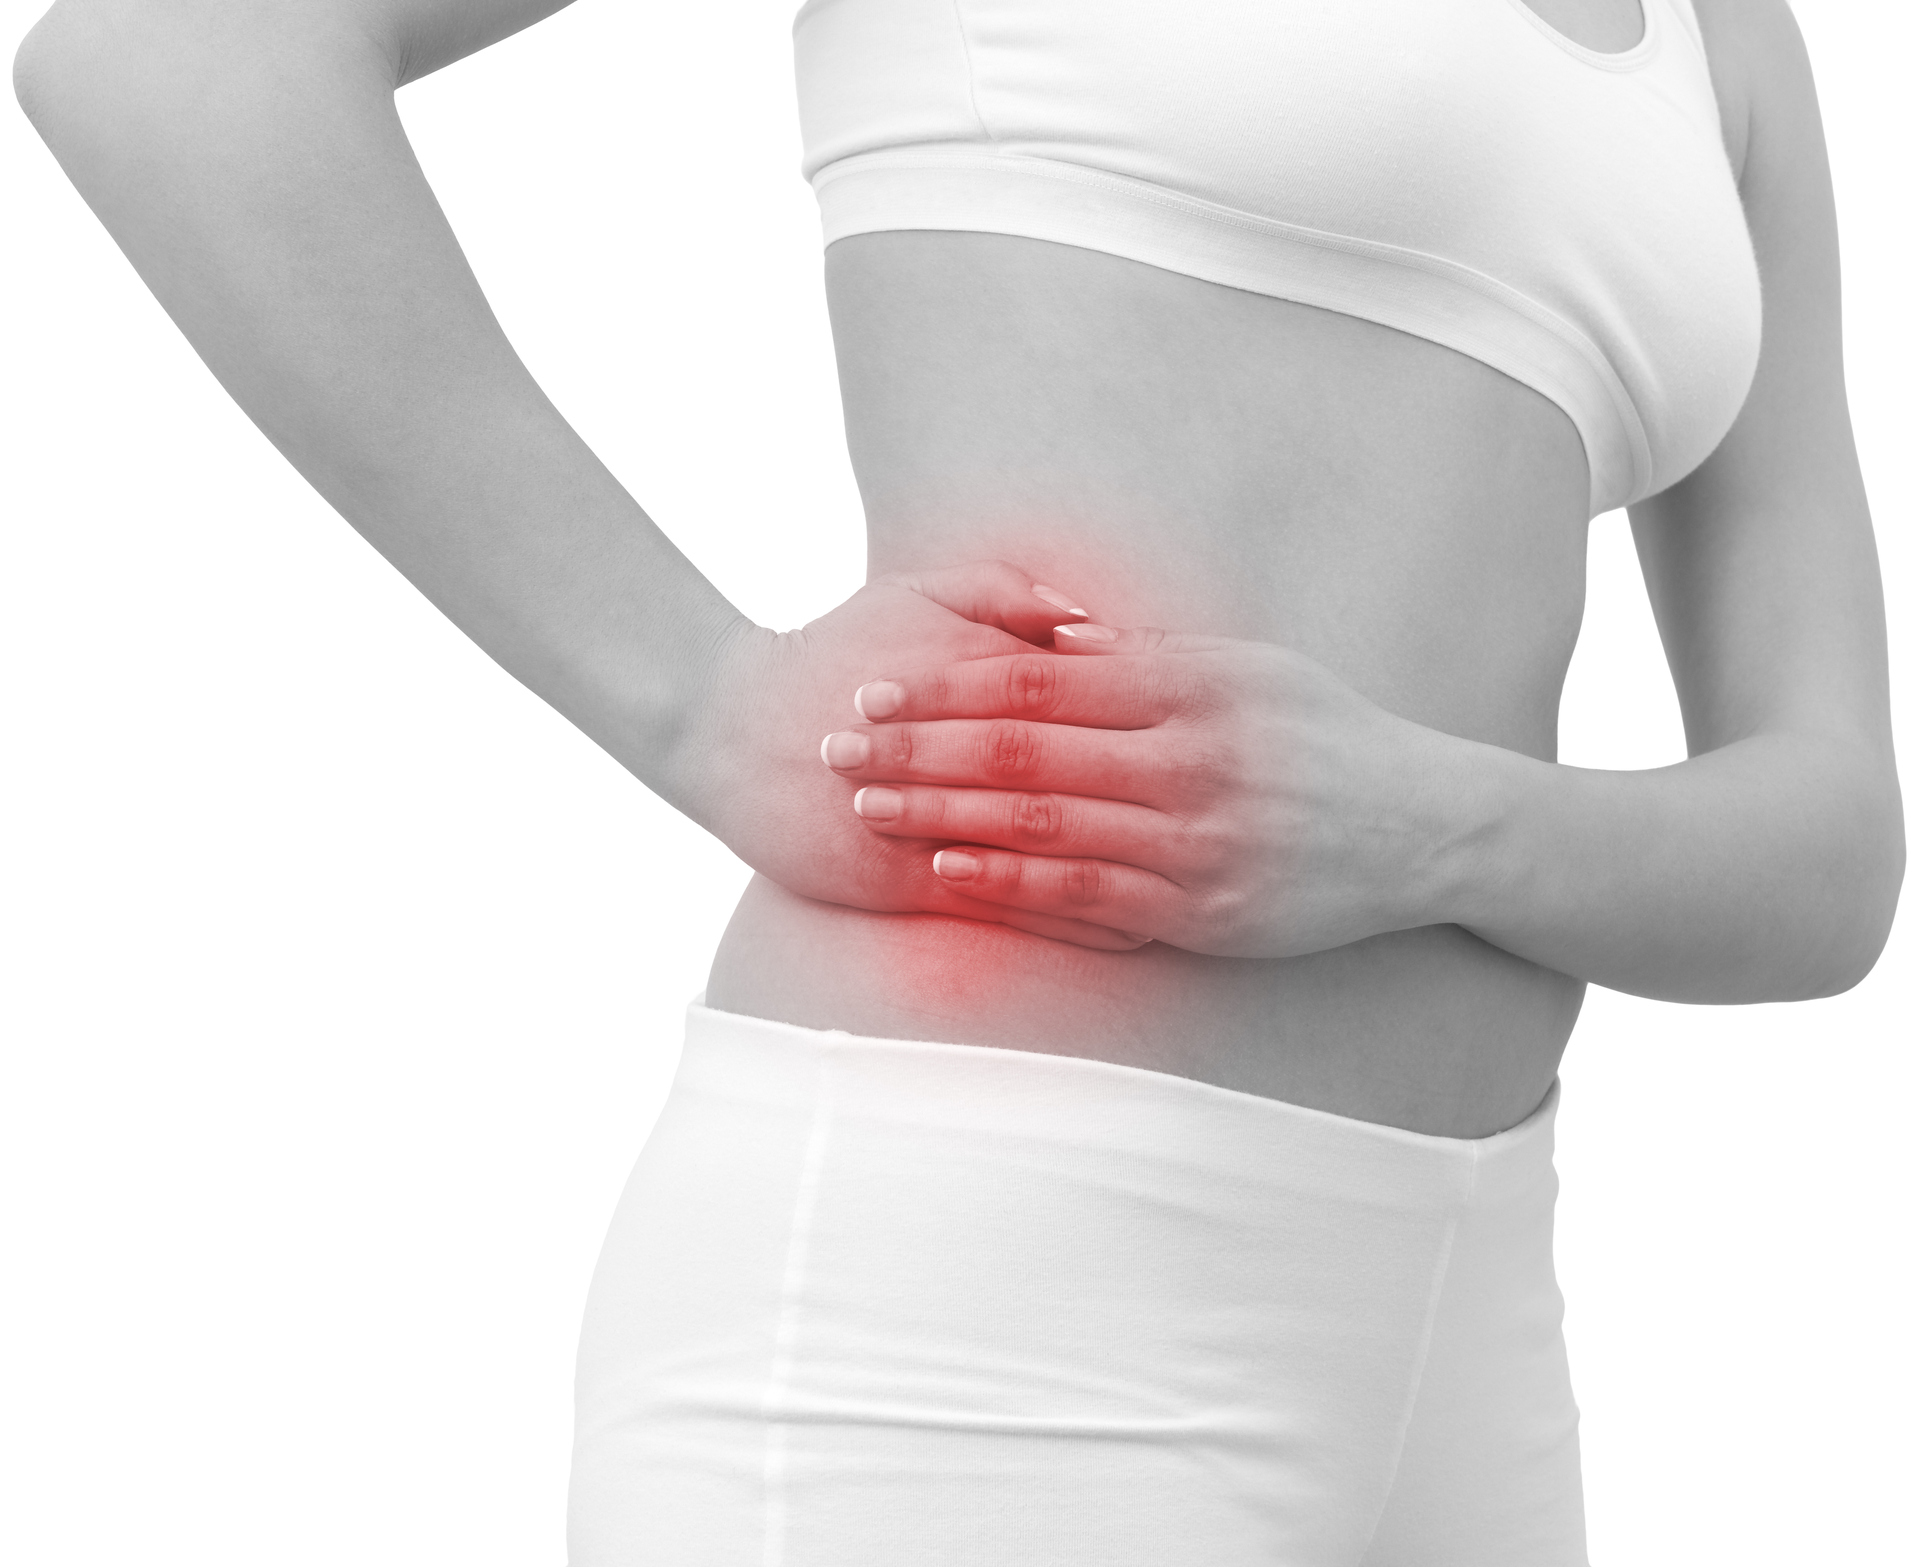 8 nguyên nhân và cách khắc phục đau bụng bên phải nhất định bạn nên biết